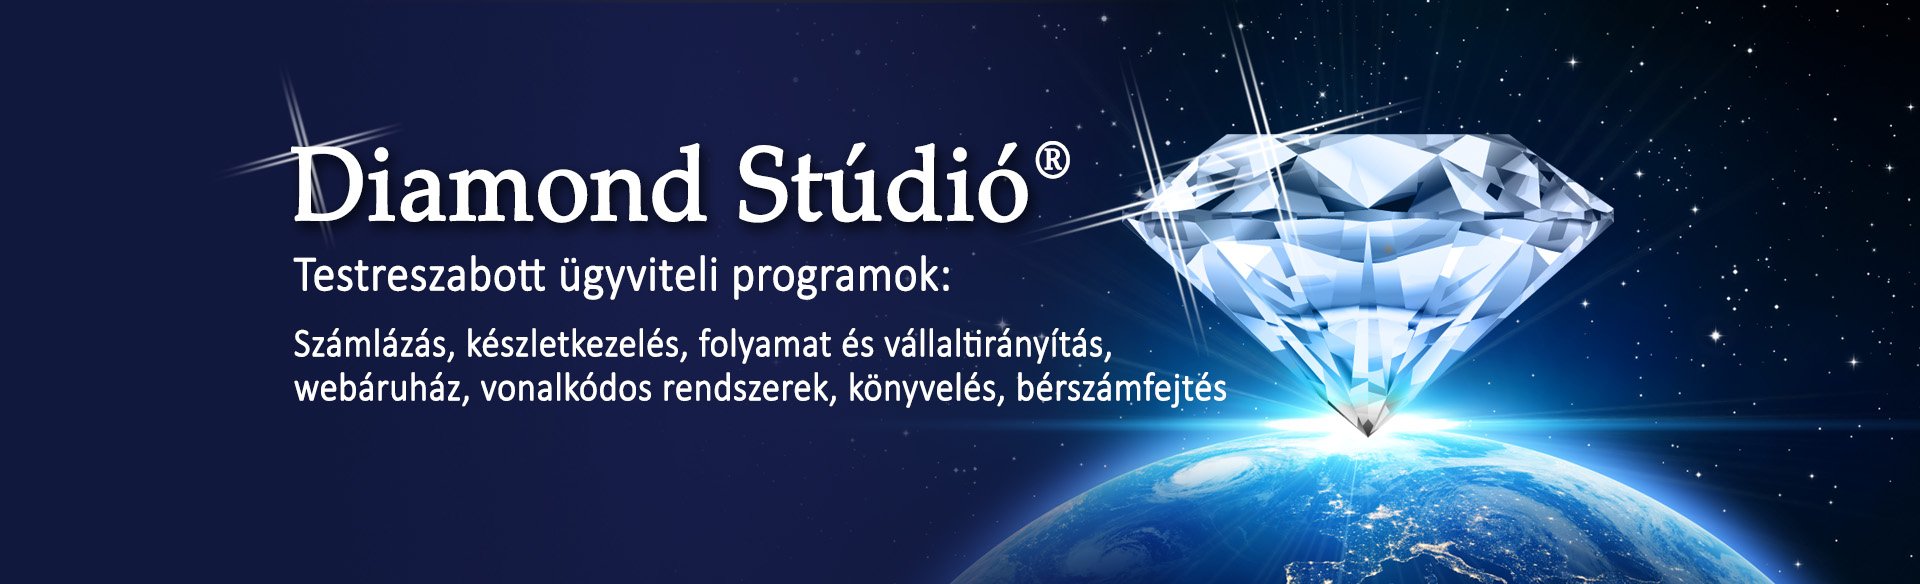 Diamond studio Személyreszabott ügyviteli programok